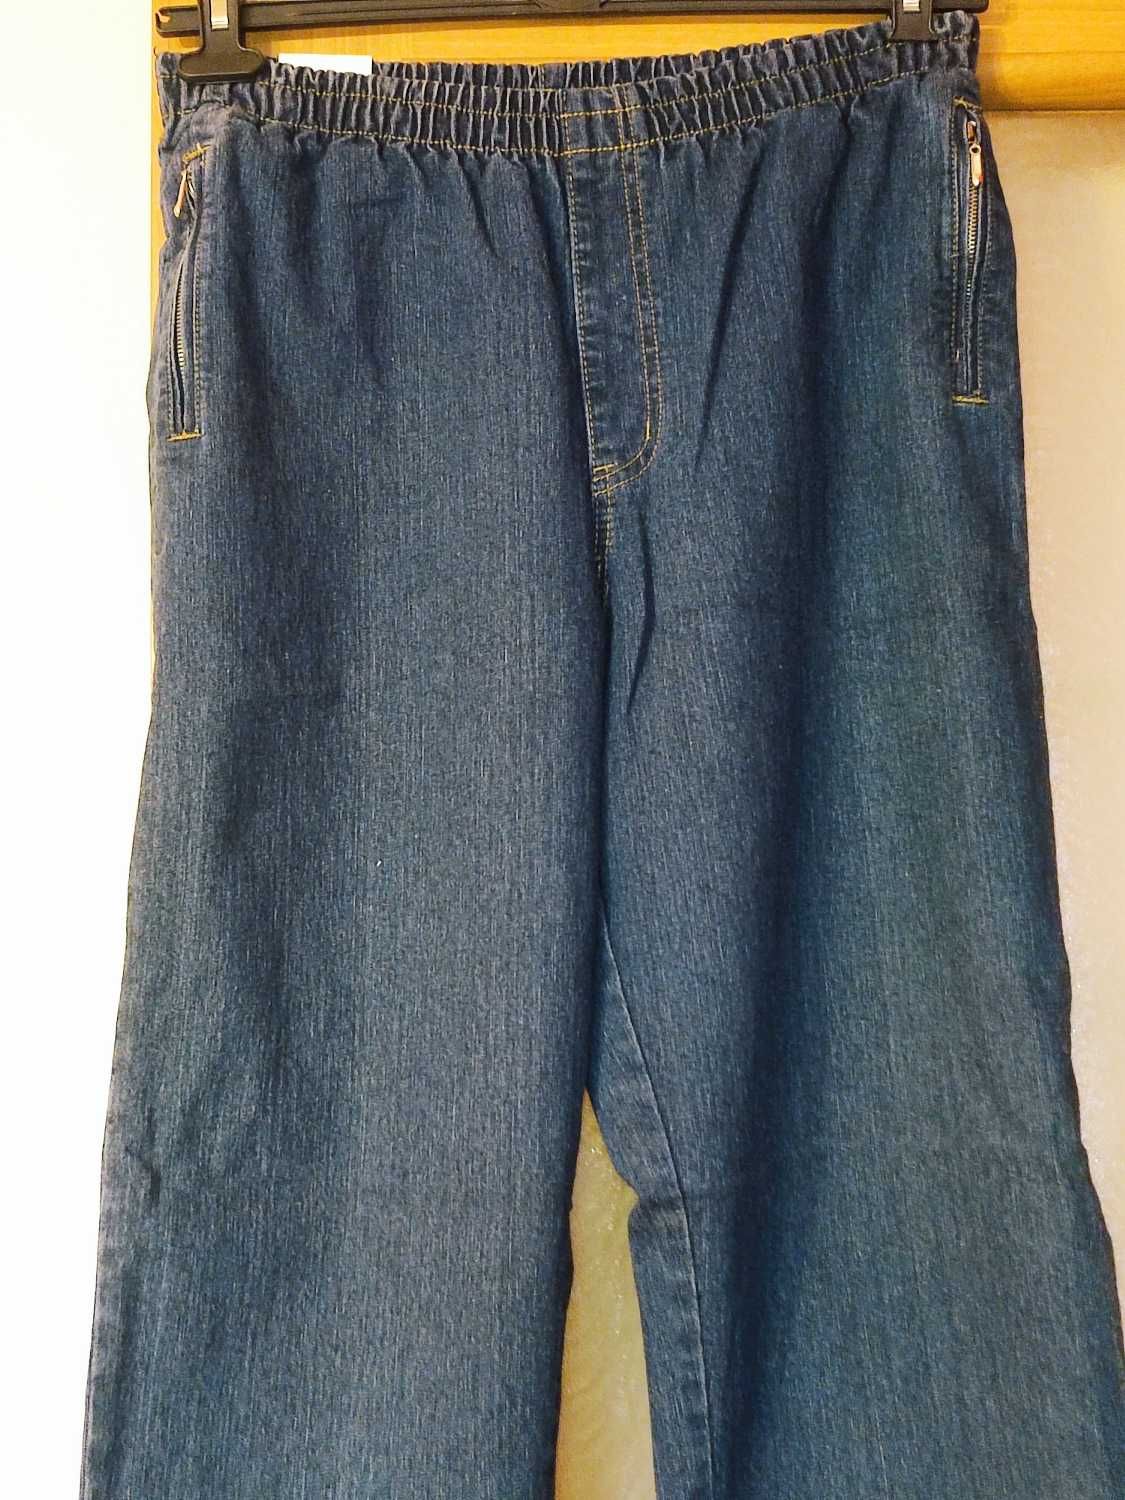 Spodnie damskie jeansowe na gumie rozm. L 40 granatowe nowe